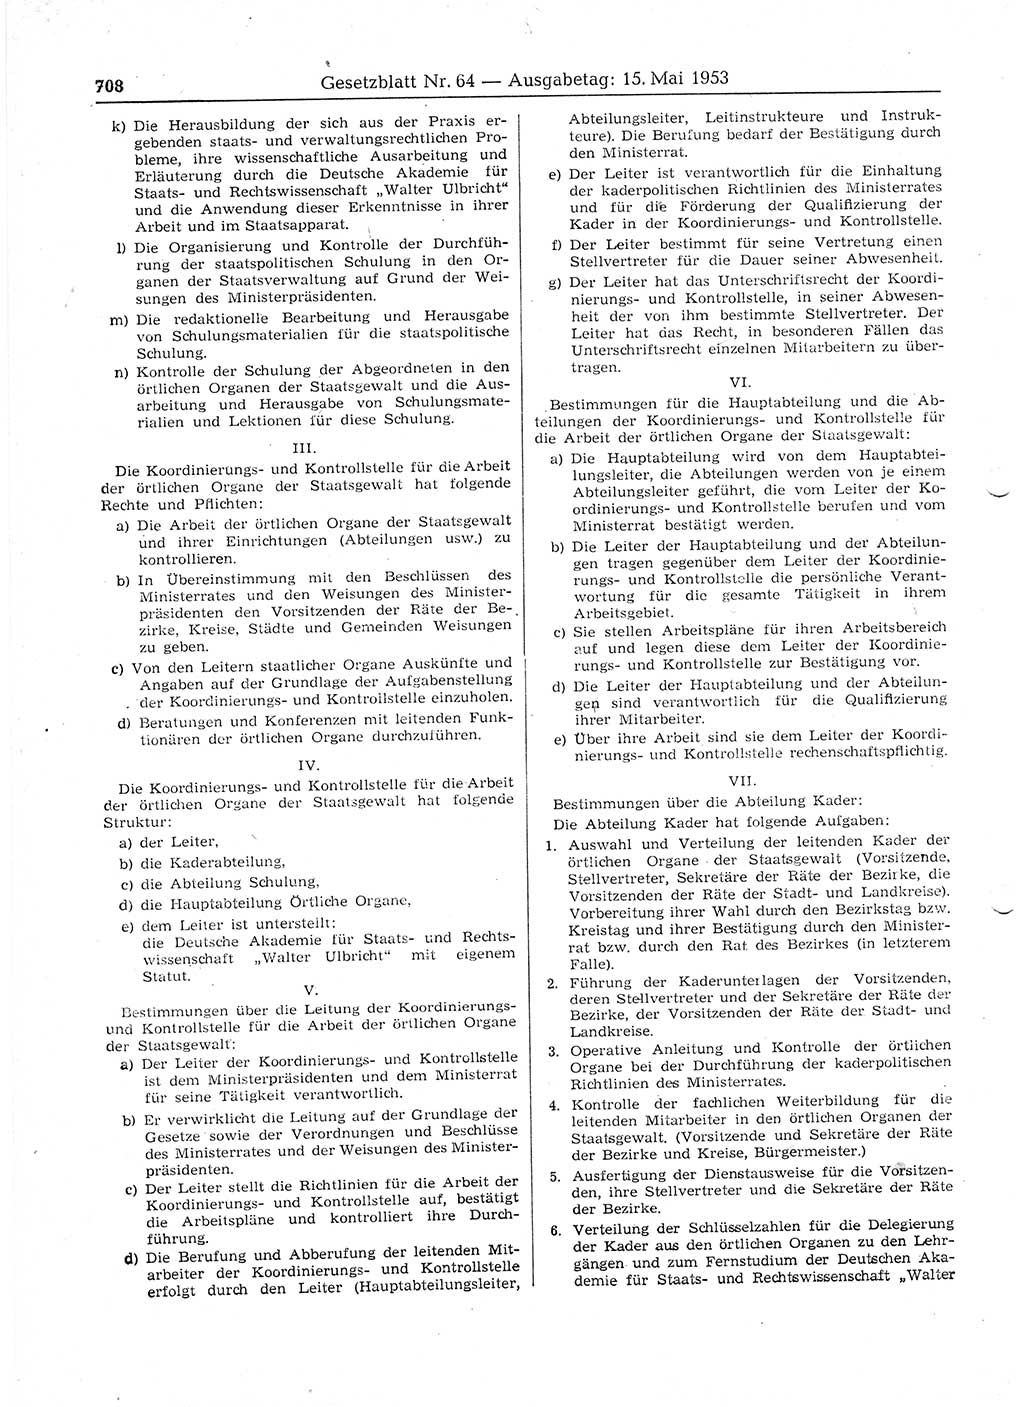 Gesetzblatt (GBl.) der Deutschen Demokratischen Republik (DDR) 1953, Seite 708 (GBl. DDR 1953, S. 708)